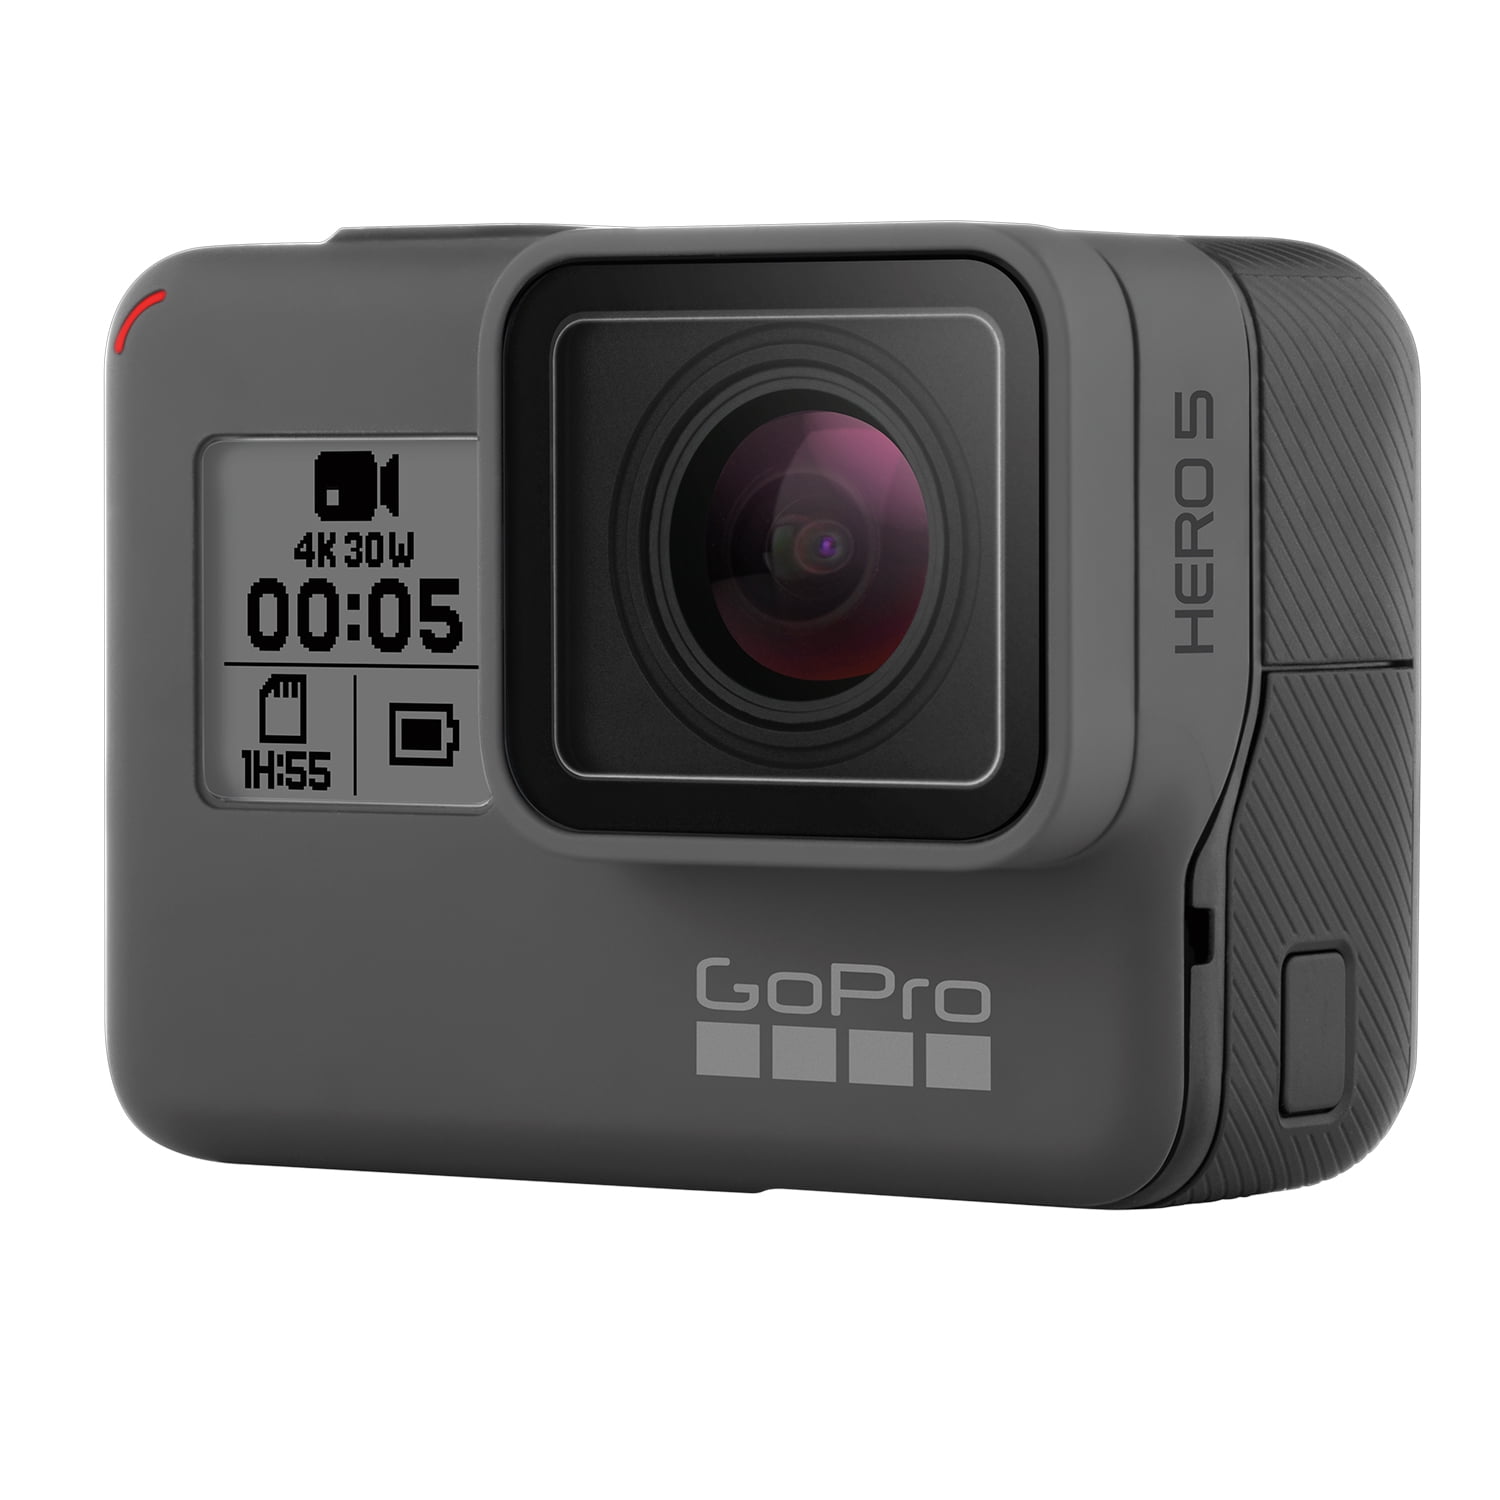 GoPro HERO5 Black Waterproof 4K Action Camera CHDHX-501 64GB Essential Kit 